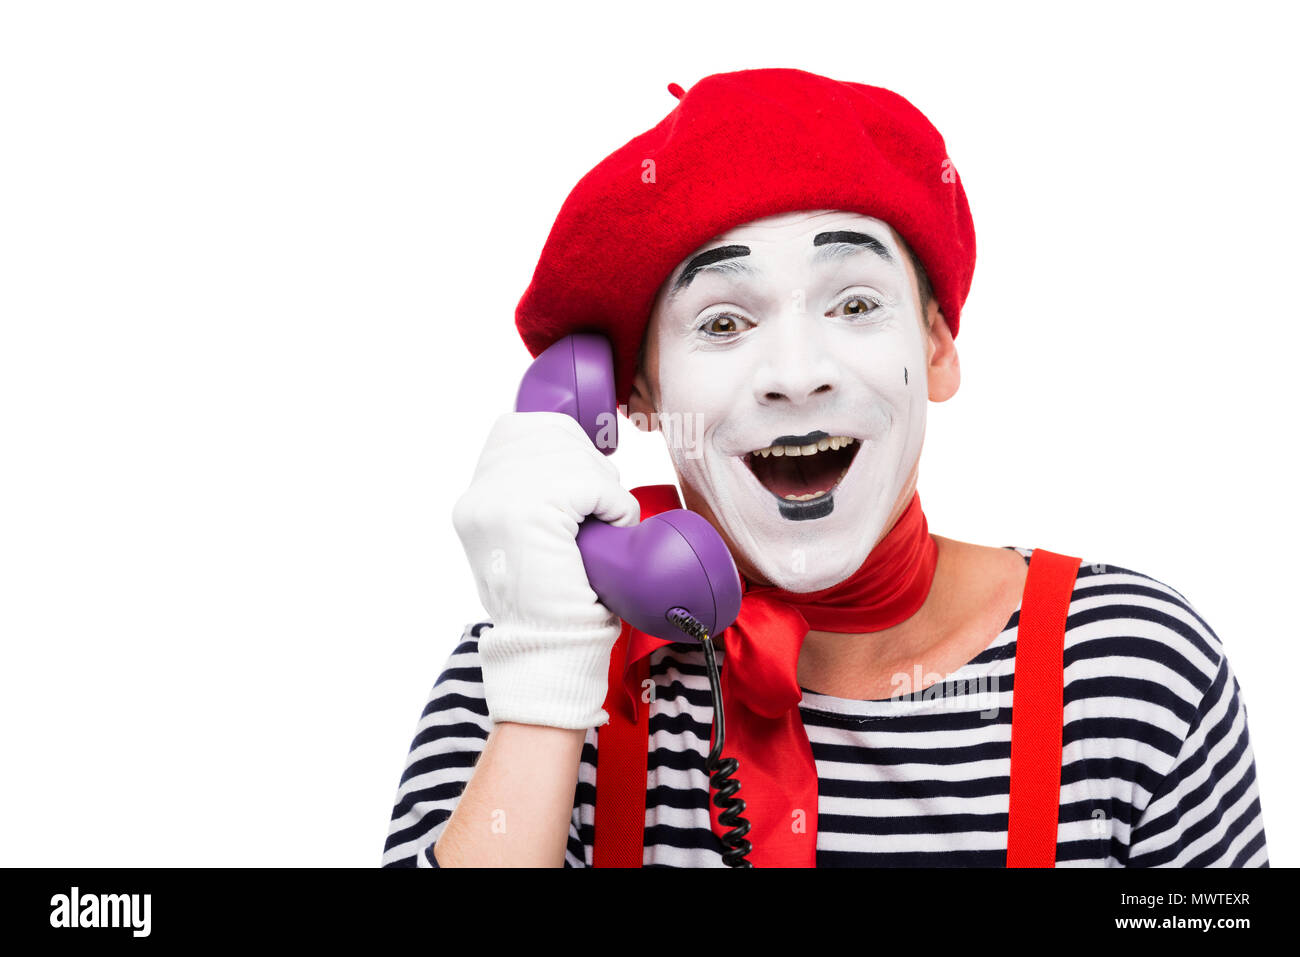 Как разговаривает клоун. Клоун с телефонной трубкой. Клоун с телефоном. Клоун разговаривает по телефону.